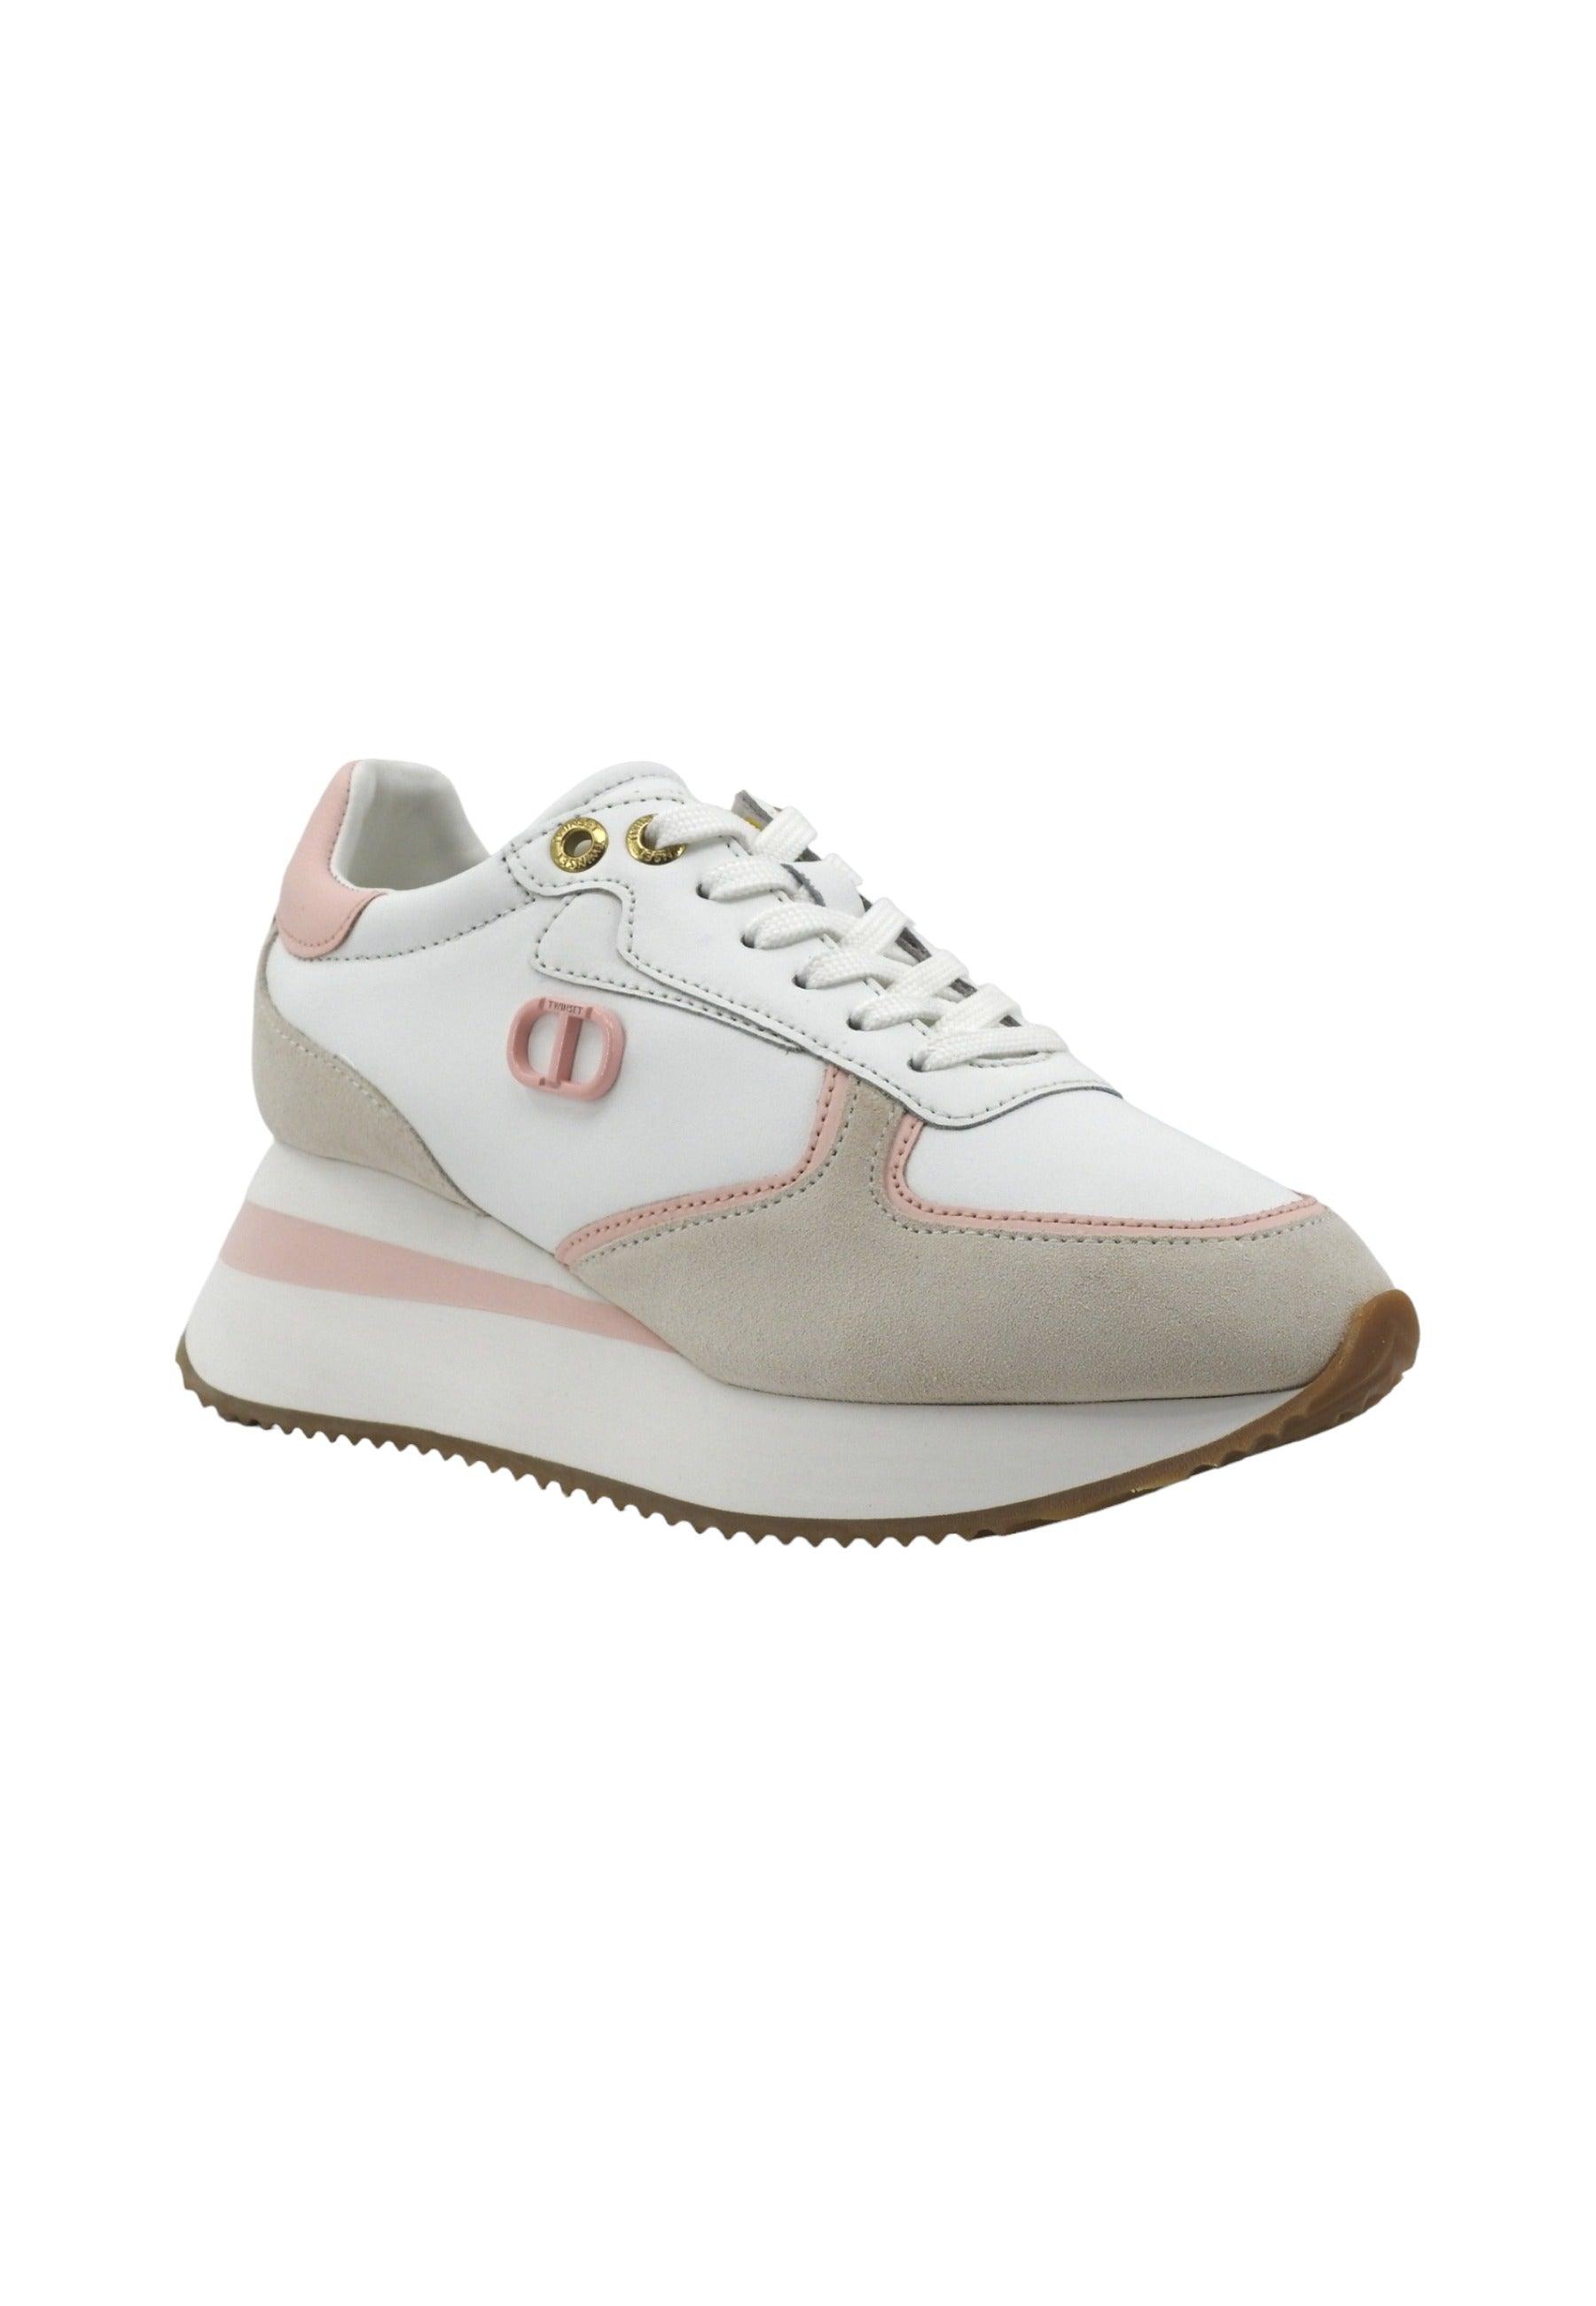 TWINSET Sneaker Donna Platform Bianco Ottico Cupcake Pink 241TC080 - Sandrini Calzature e Abbigliamento